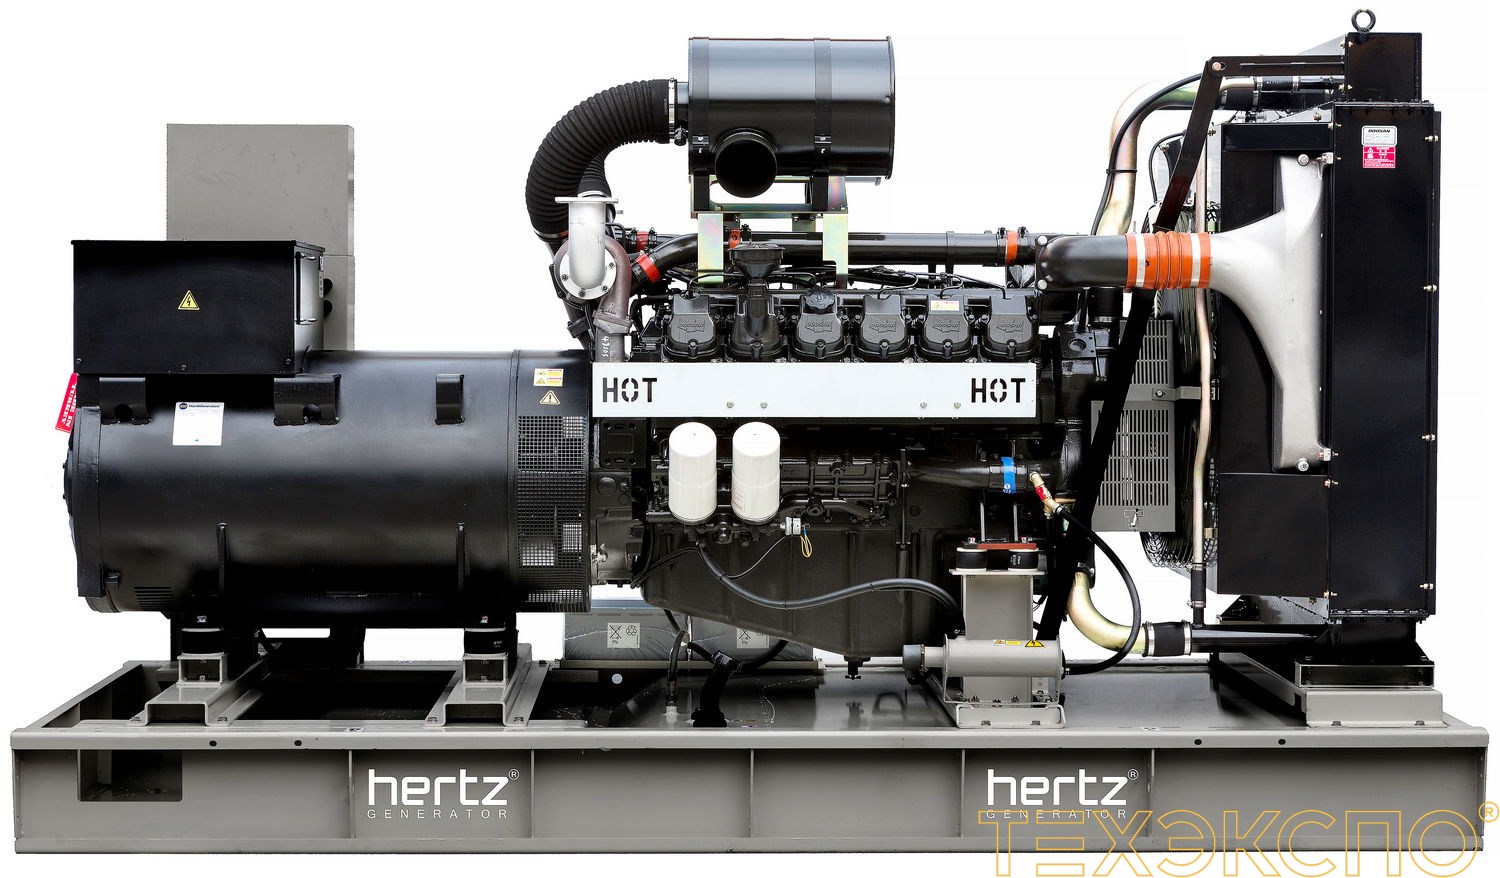 HERTZ HG730DL - ДЭС 528 кВт в Санкт-Петербурге за 11 277 876 рублей | Дизельная электростанция в Техэкспо